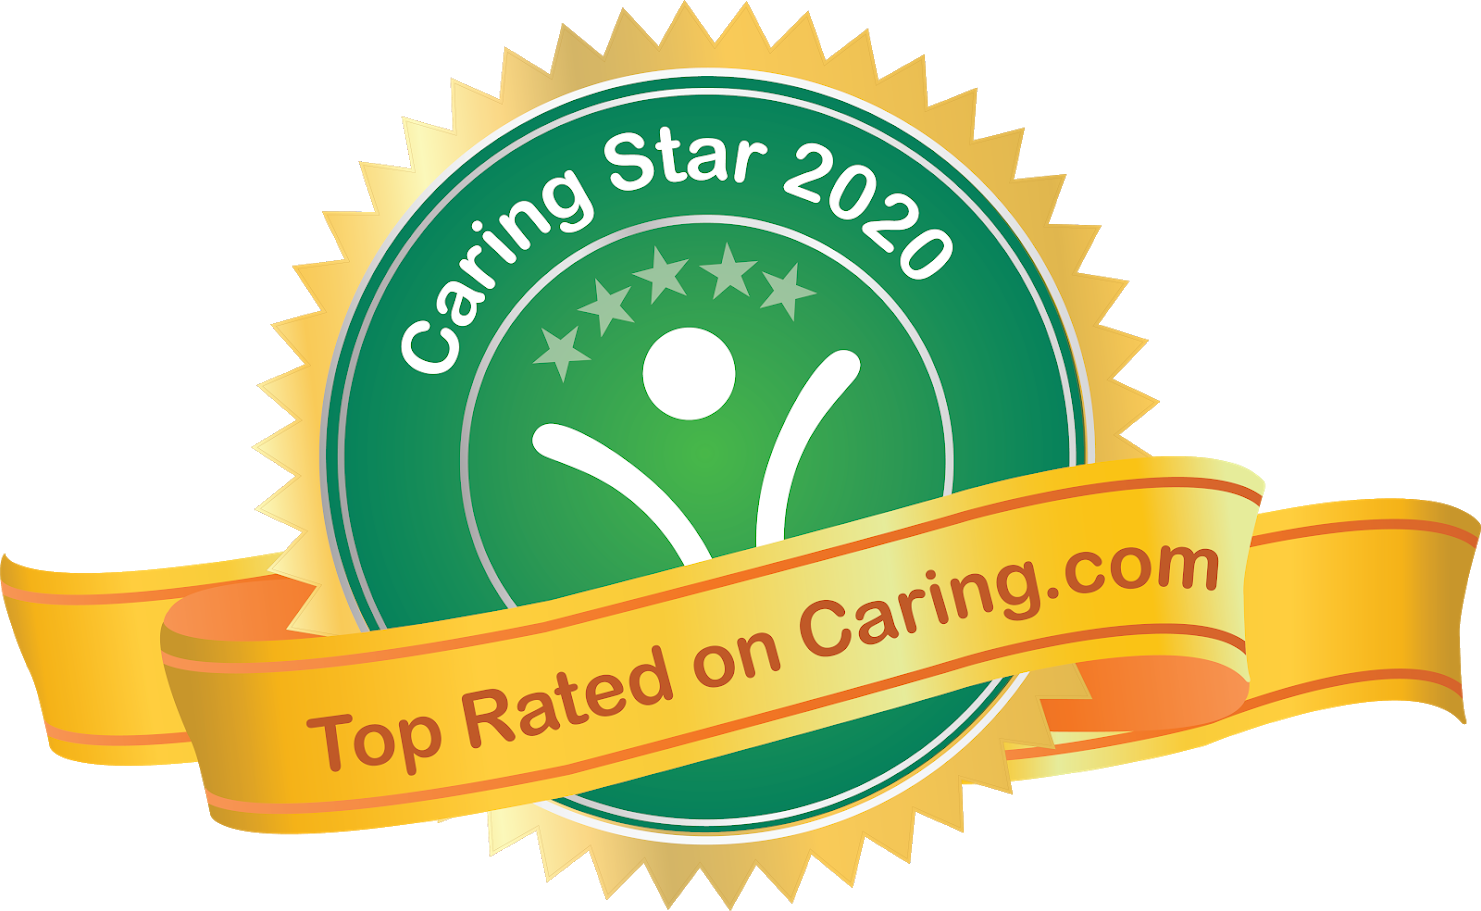 2020 Caring Star Award